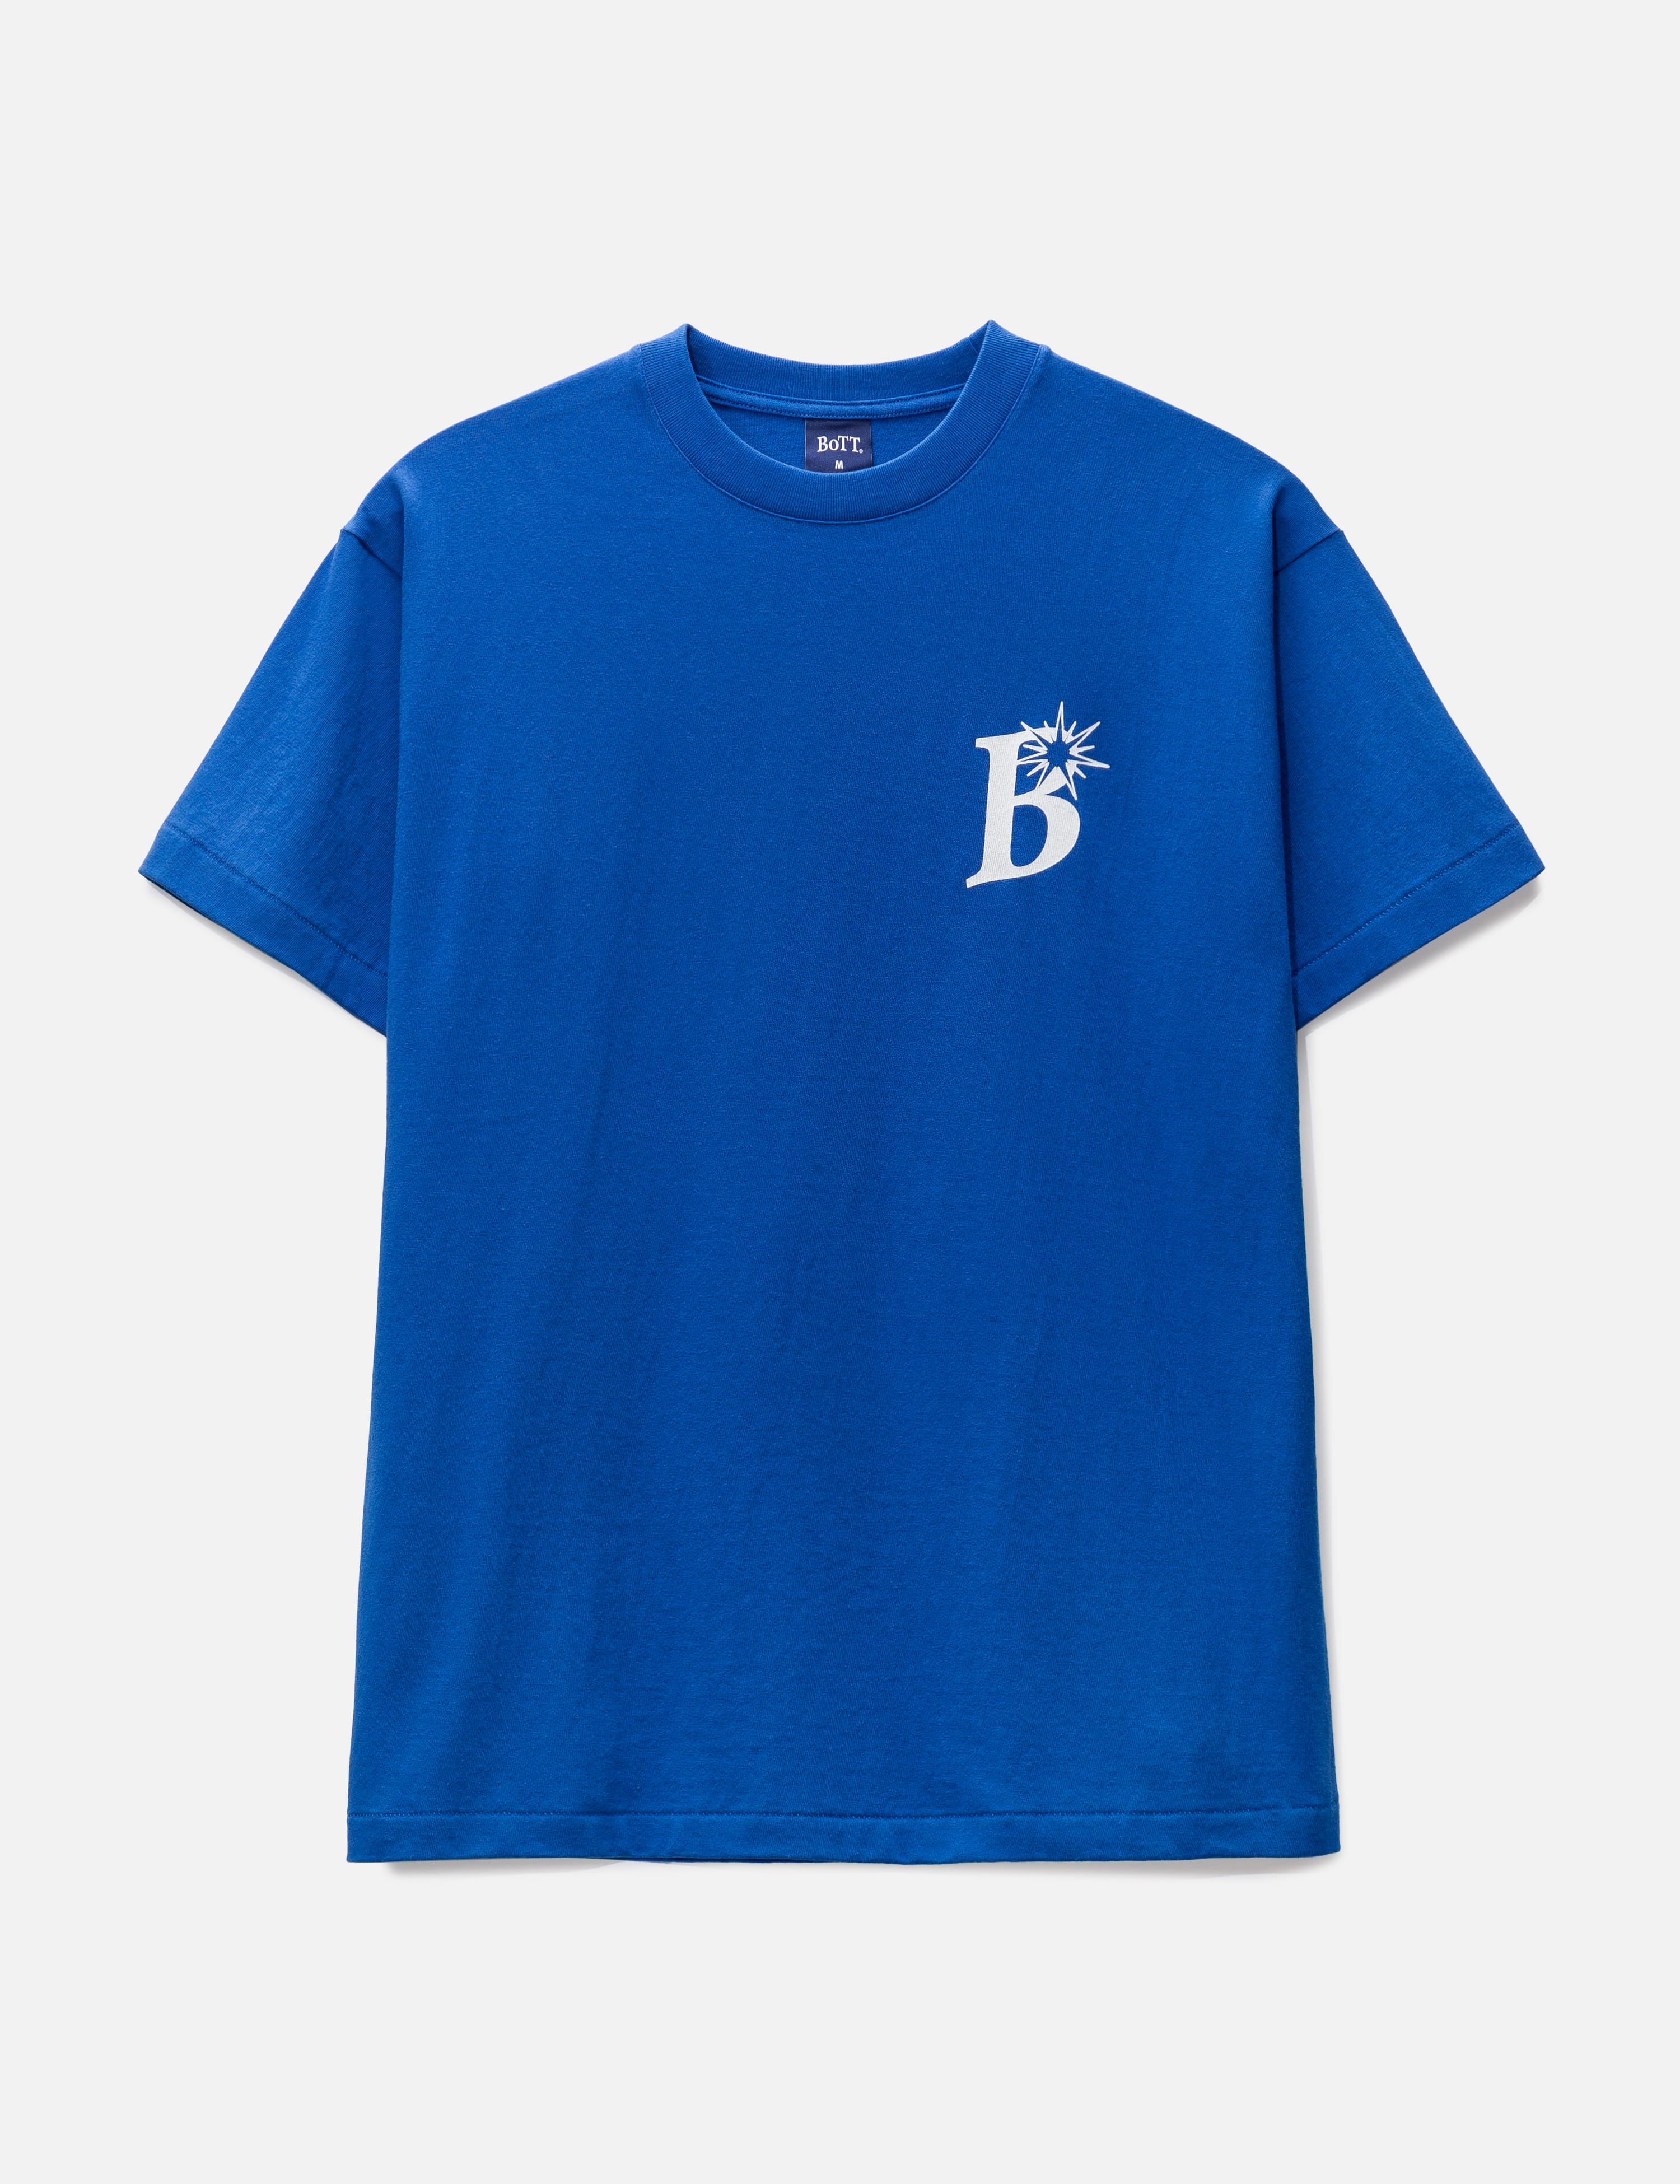 BoTT   BoTT OG Logo T shirt   HBX   ハイプビーストHypebeastが